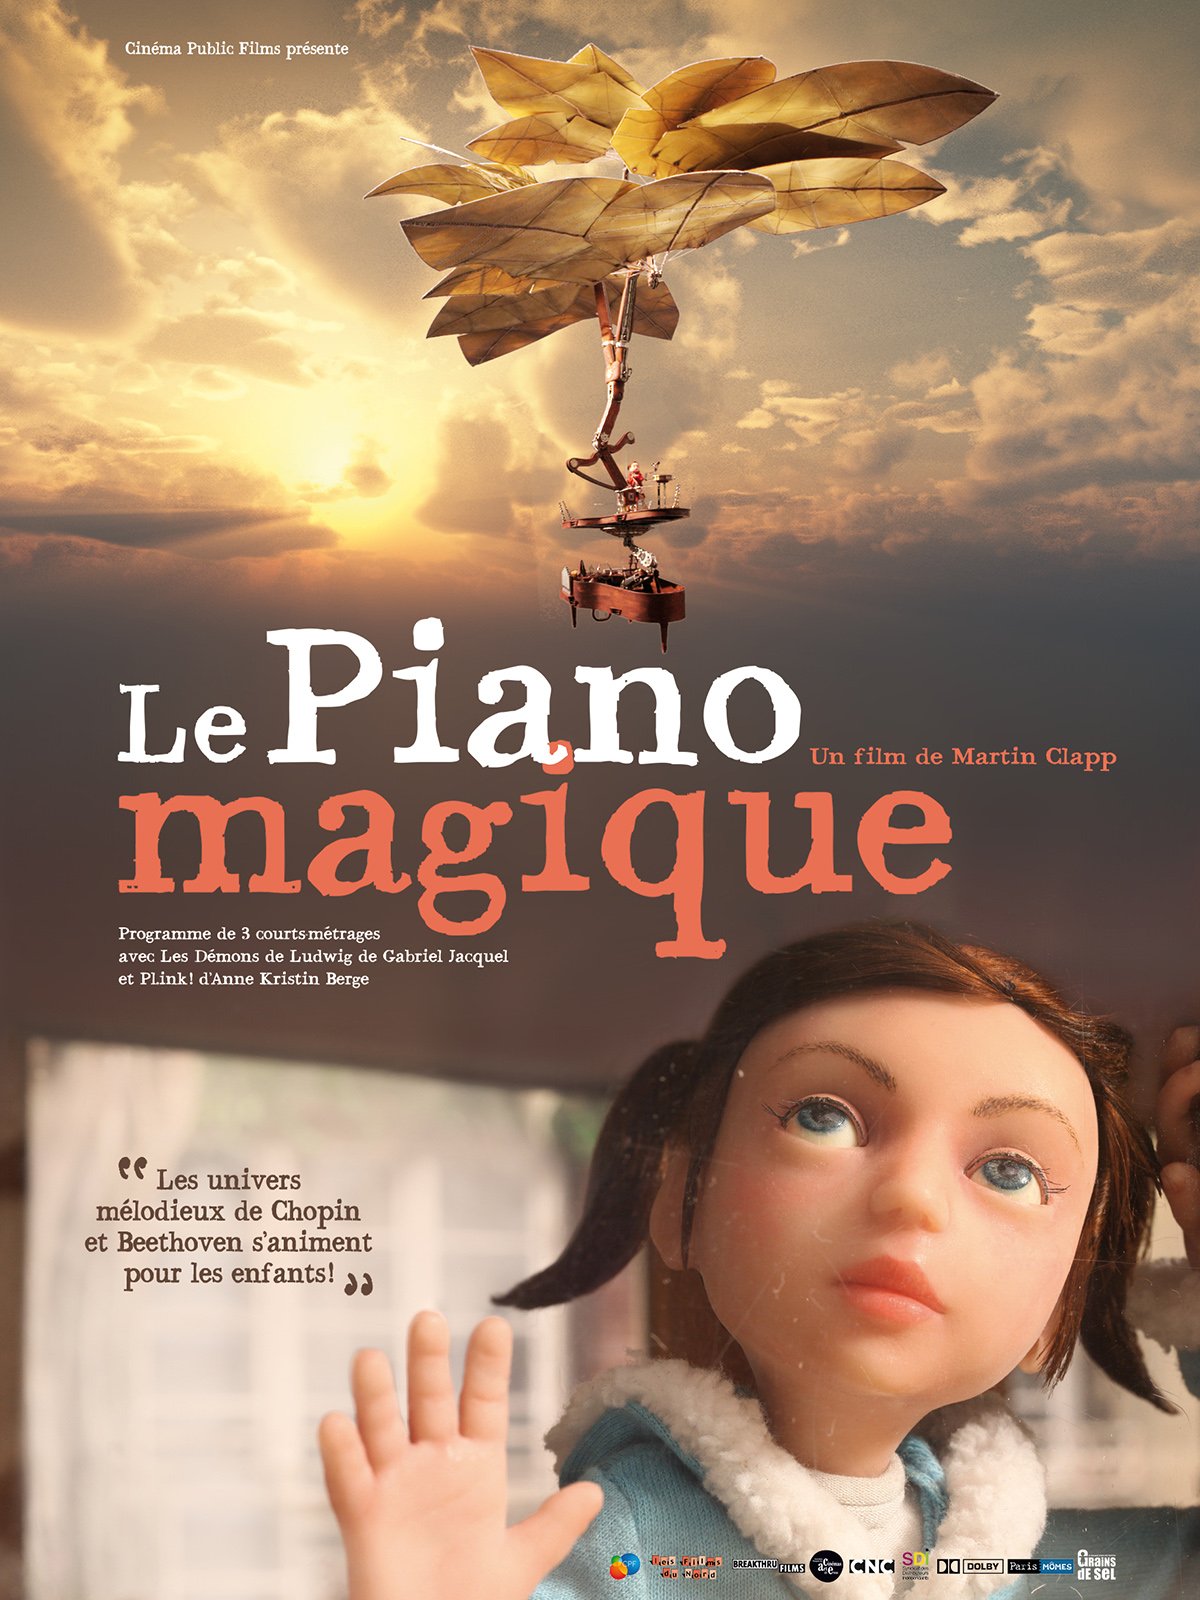 Le Piano Magique : Photos et affiches - AlloCiné